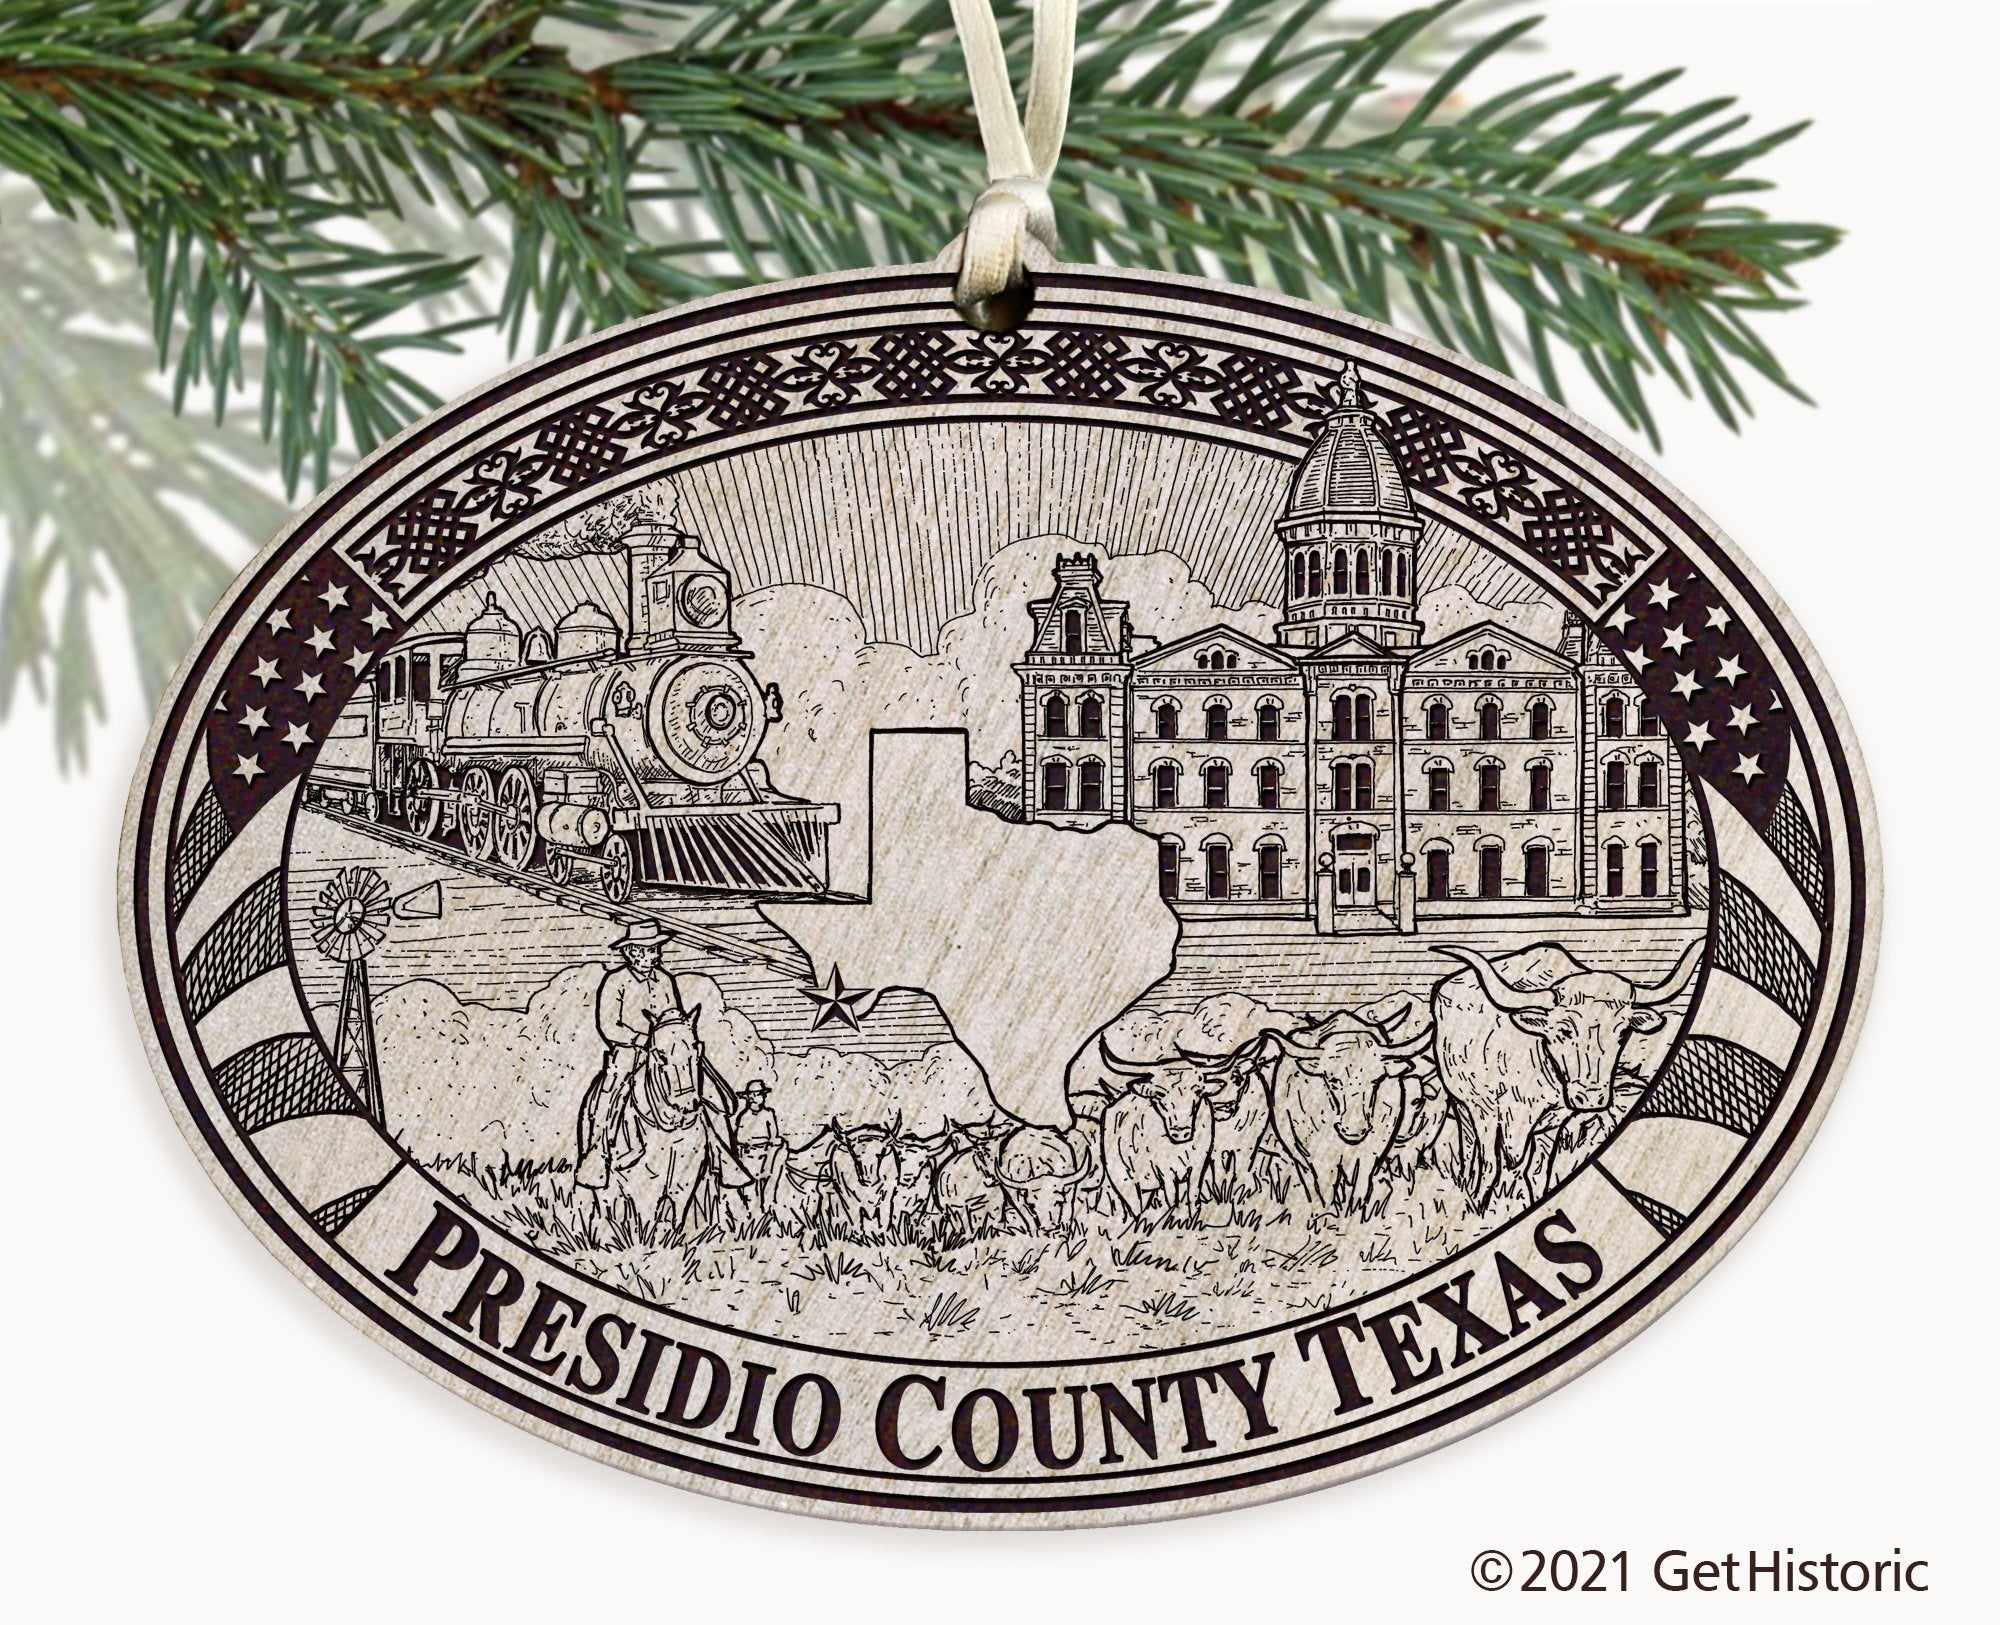 Presidio County Texas Engraved Ornament